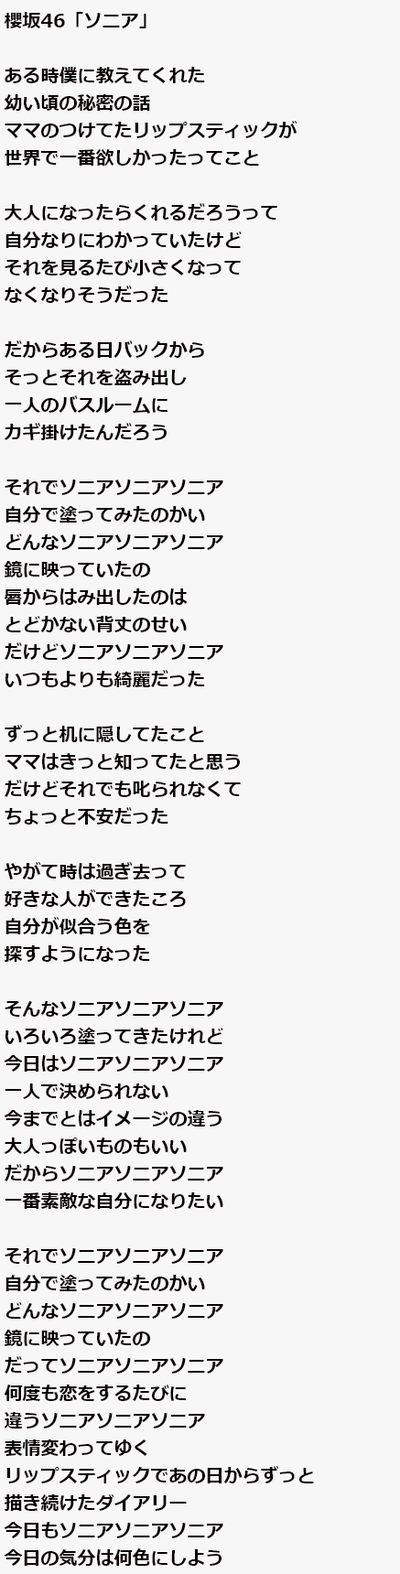 櫻坂46 ソニアとは ファンによって解釈が様々な ソニア 歌詞書き起こしがこちら 櫻坂46まとめもり